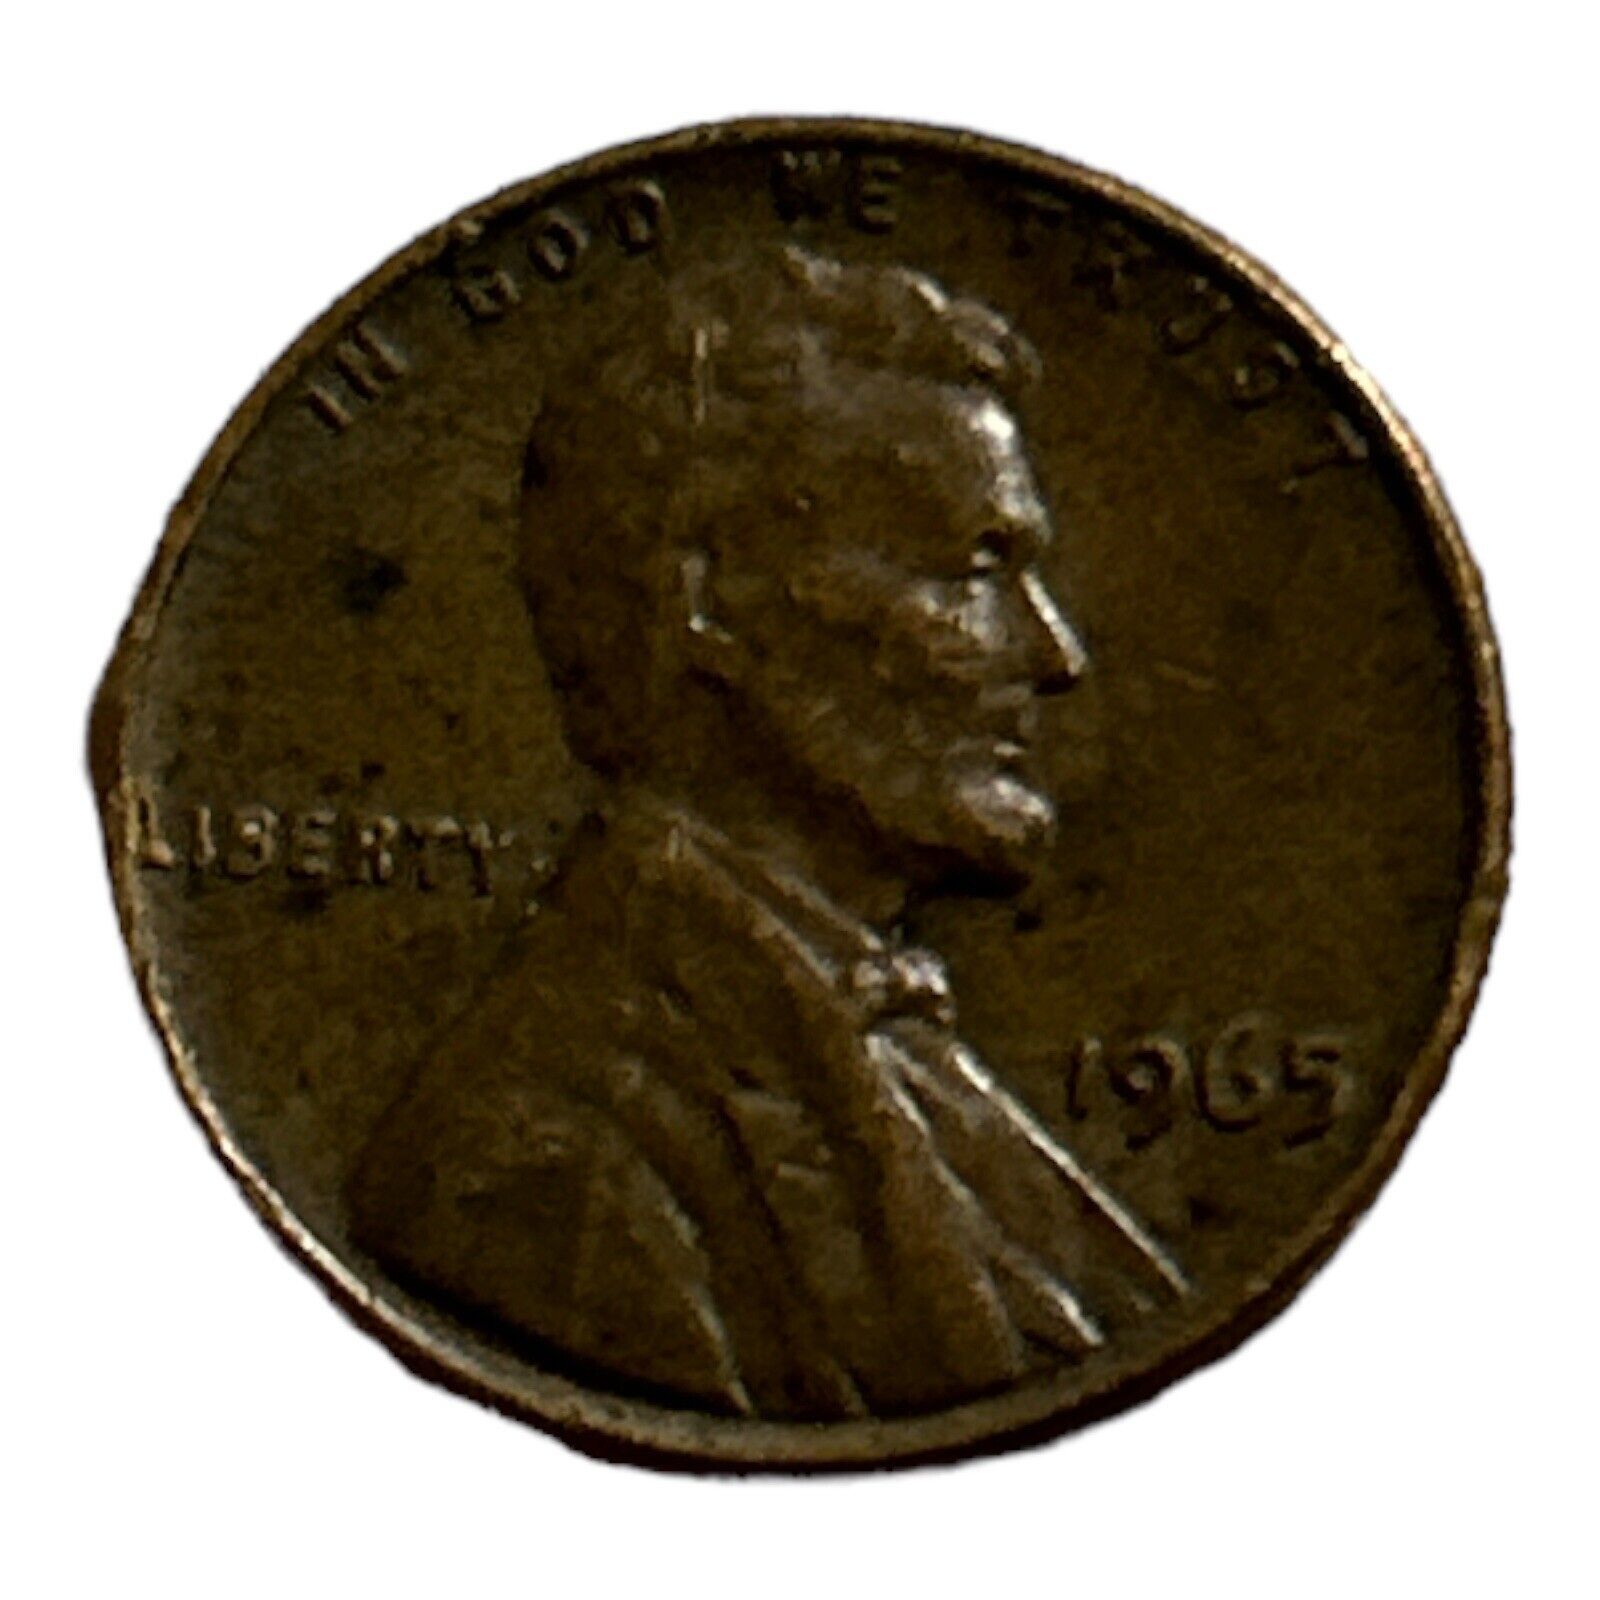 1965 Lincoln Memorial Penny No Mint Mark. RARE Coin